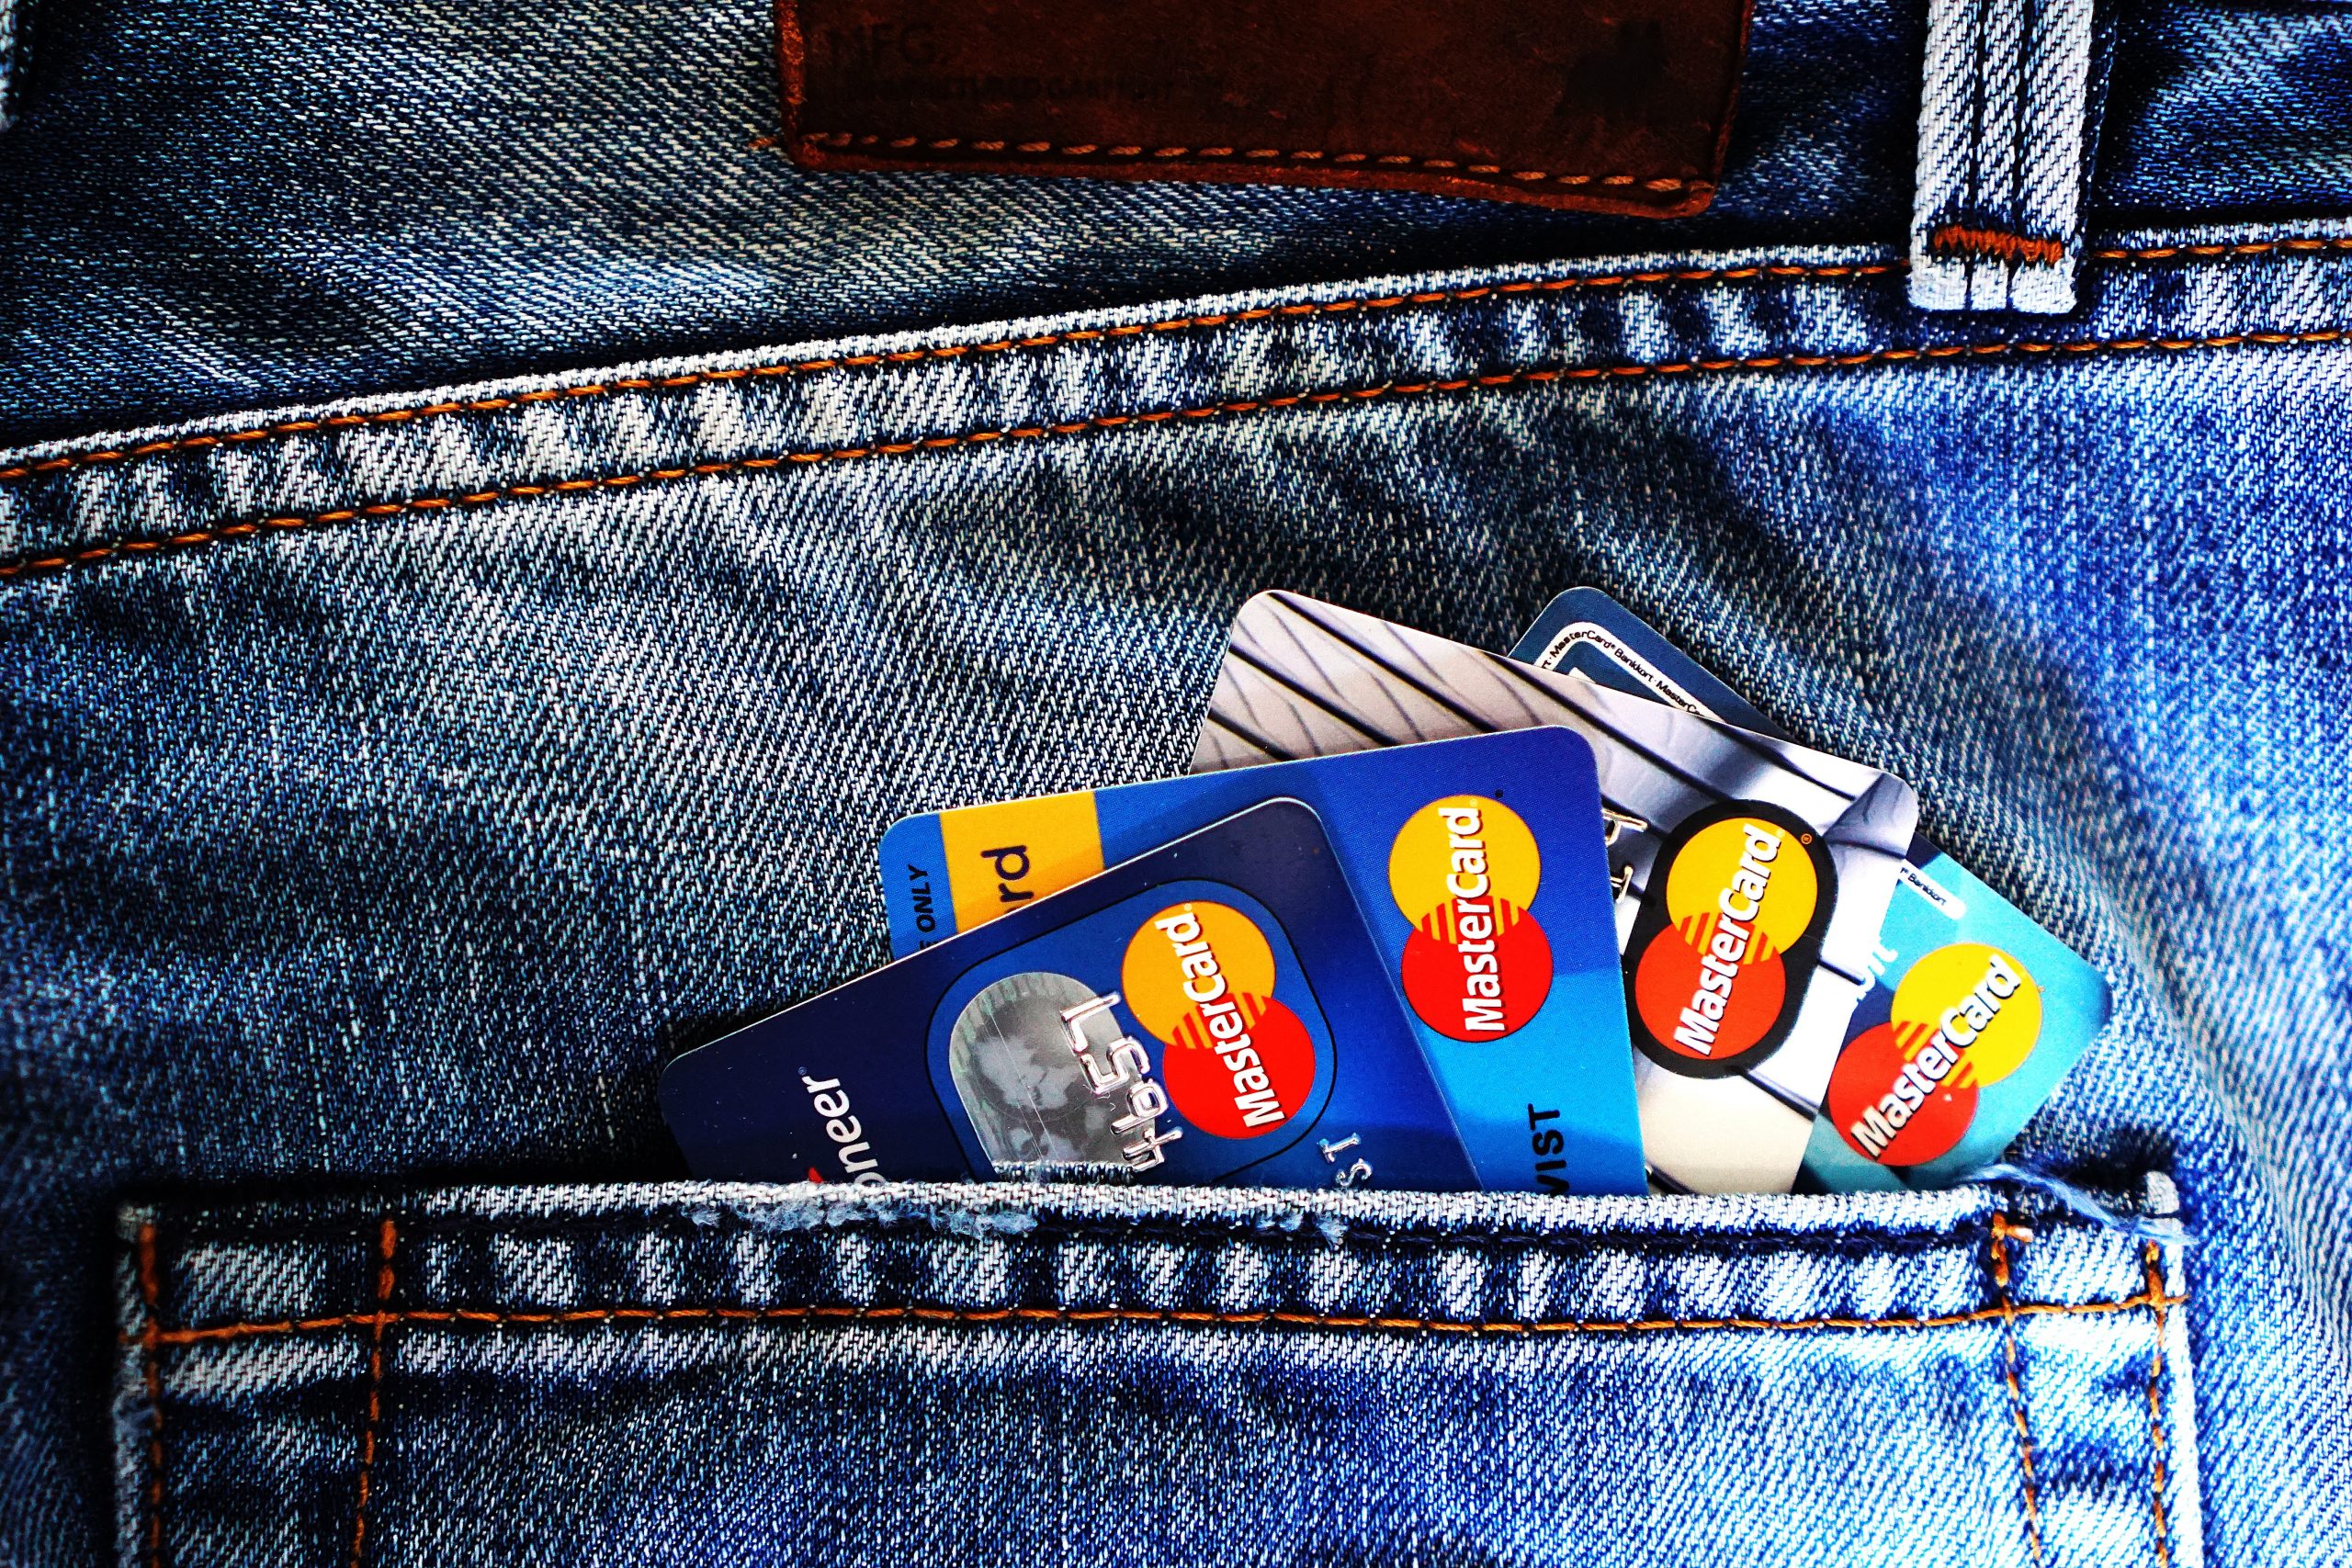 Mastercard Gold oferece benefícios de seguros em compras; veja como funciona